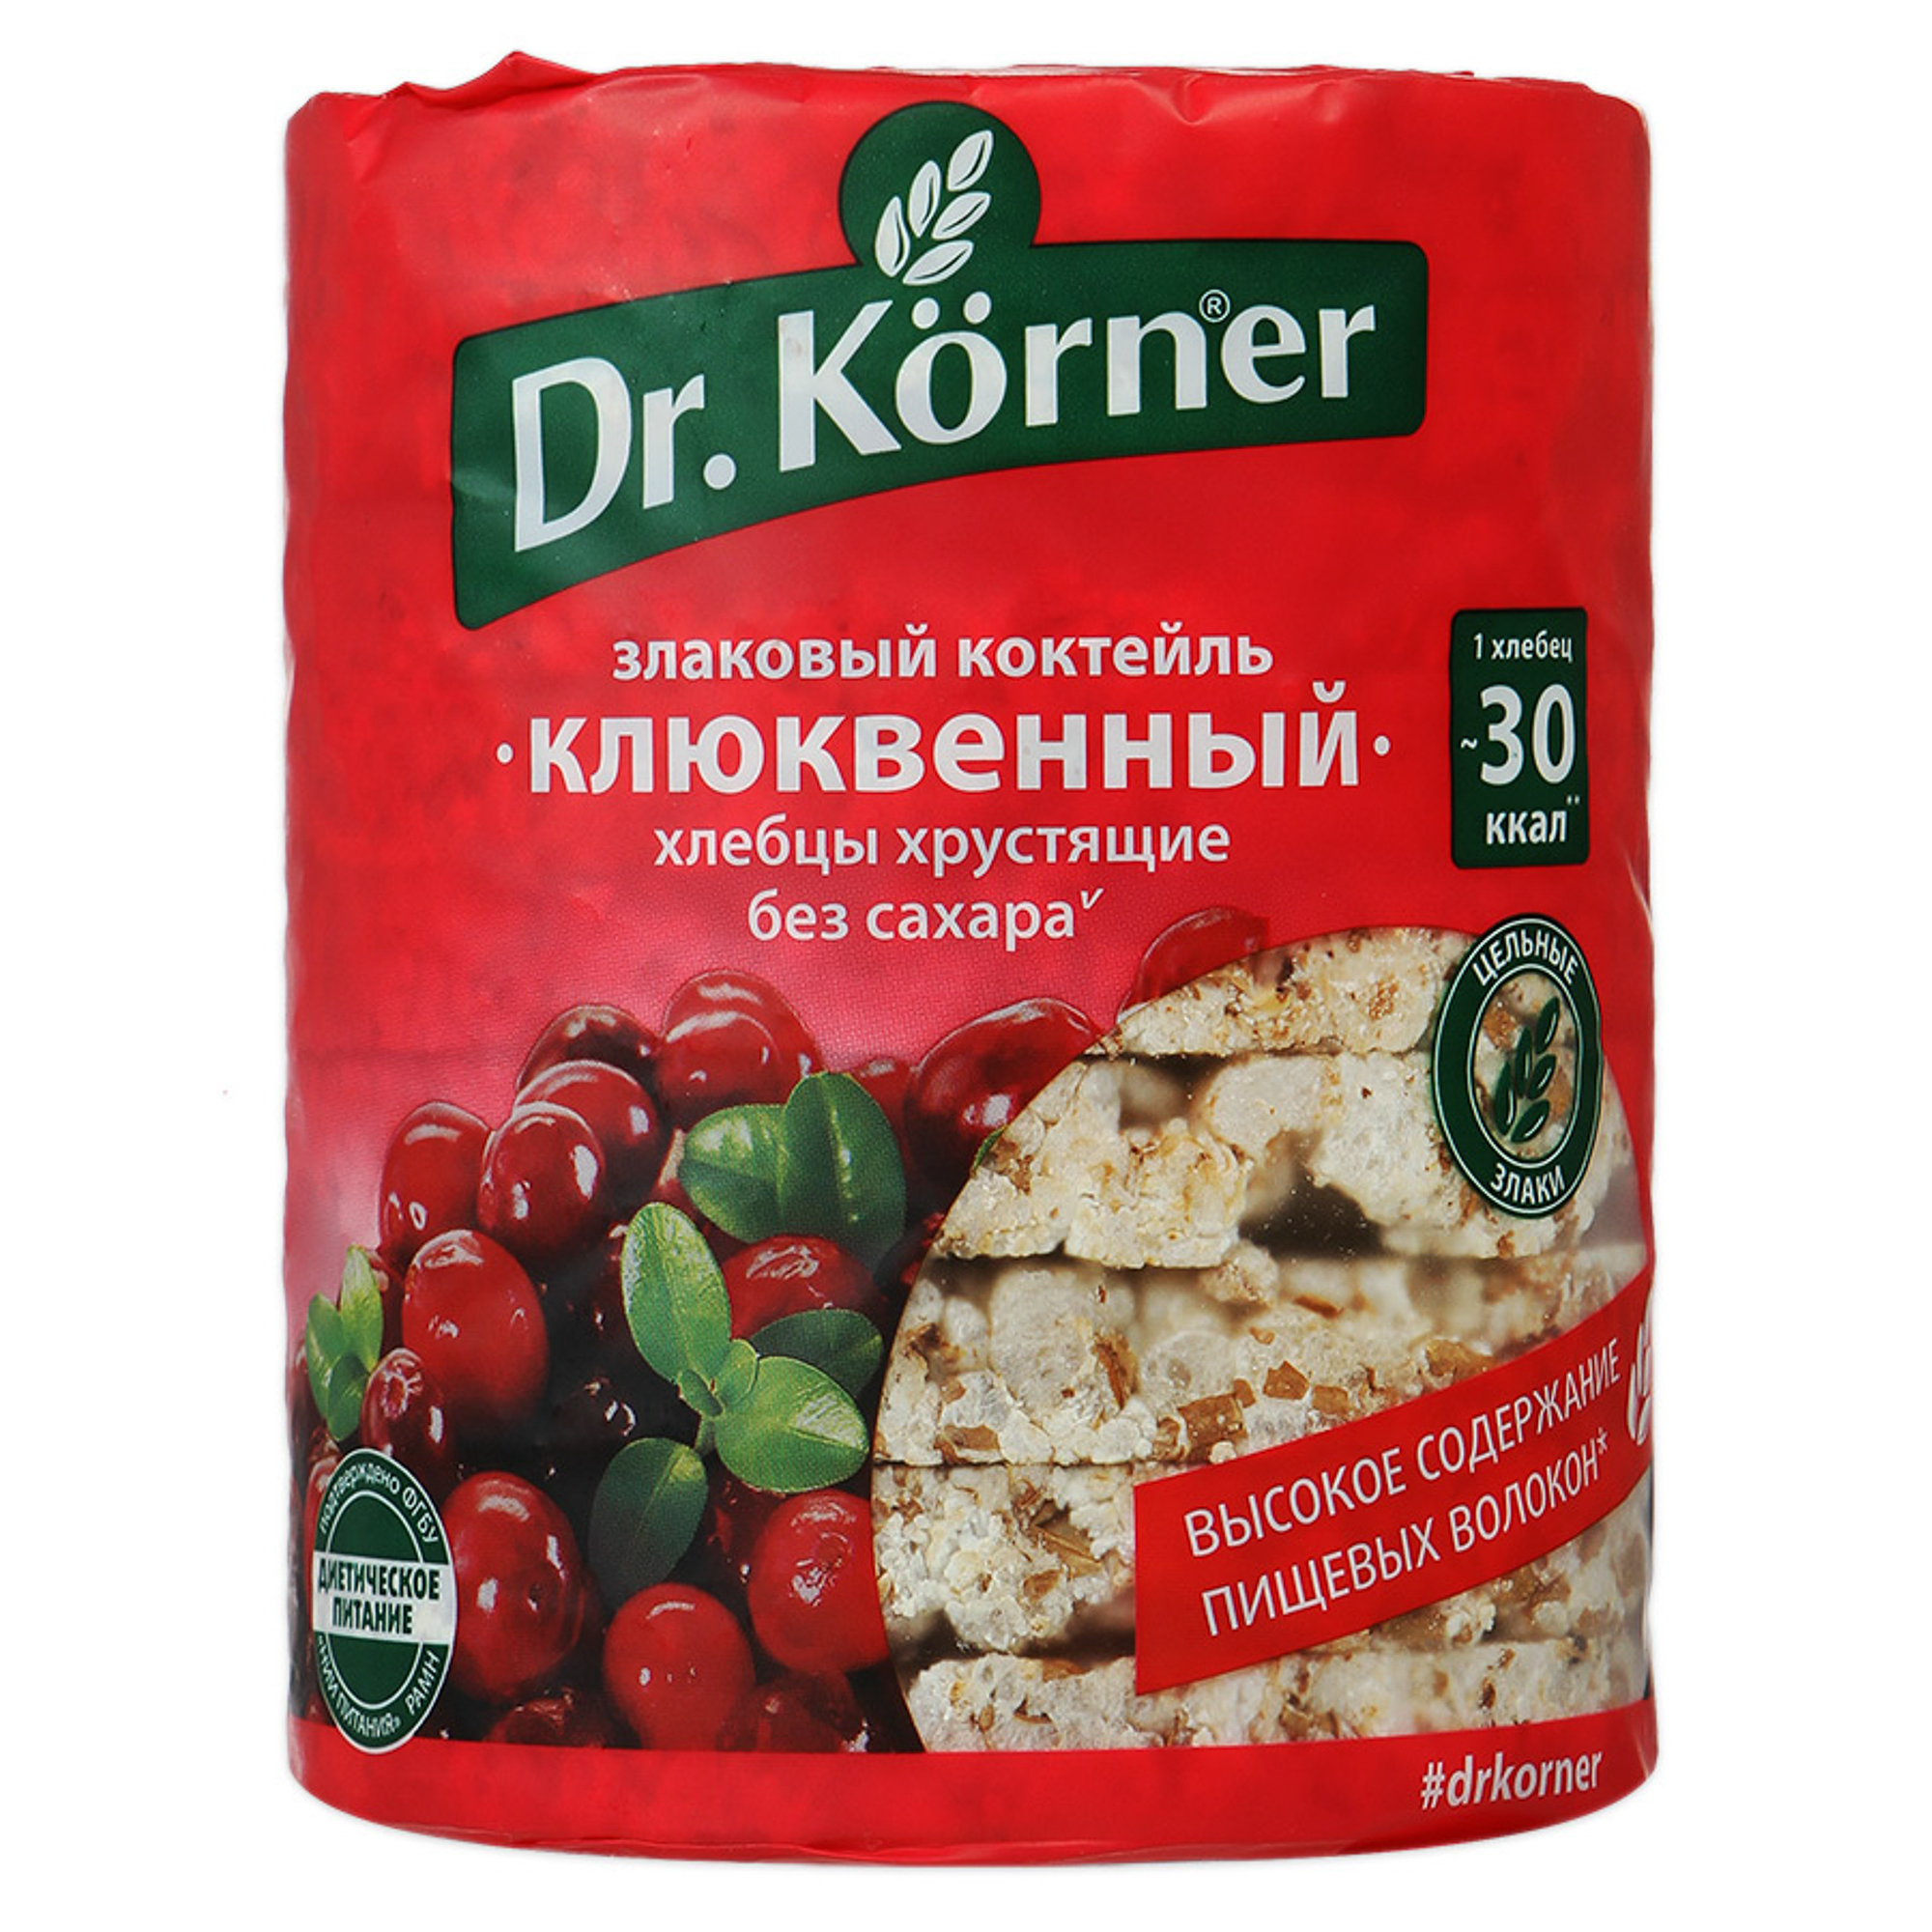 Хлебцы хрустящие Dr. Korner Злаковый коктейль клюквенный 100 г